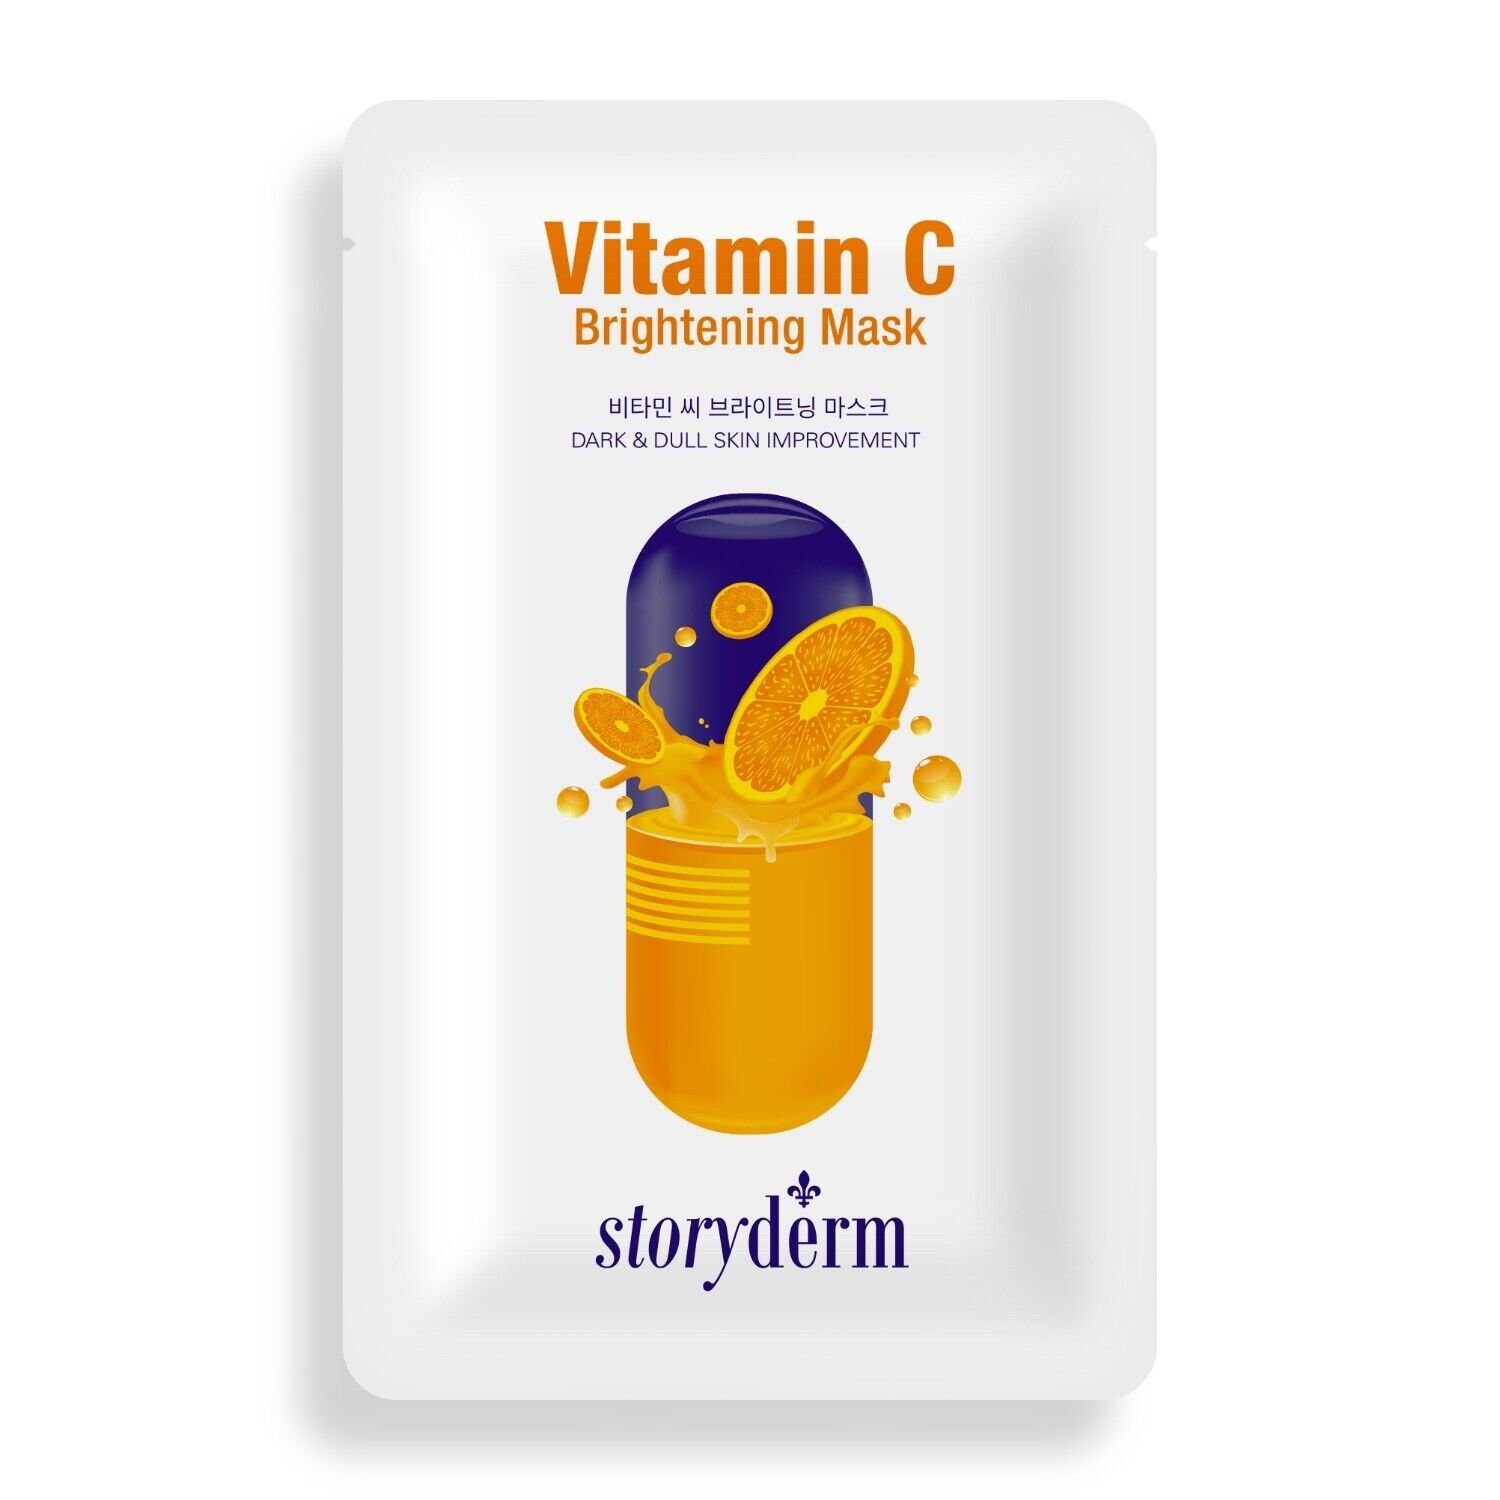 Pflege Storyderm Gesichtsmaske Premium VITAMIN Vitamin Storyderm C C, aus Korea 1-tlg. Gesichtsmaske NEUHEIT BRIGHTENING Tuchmaske